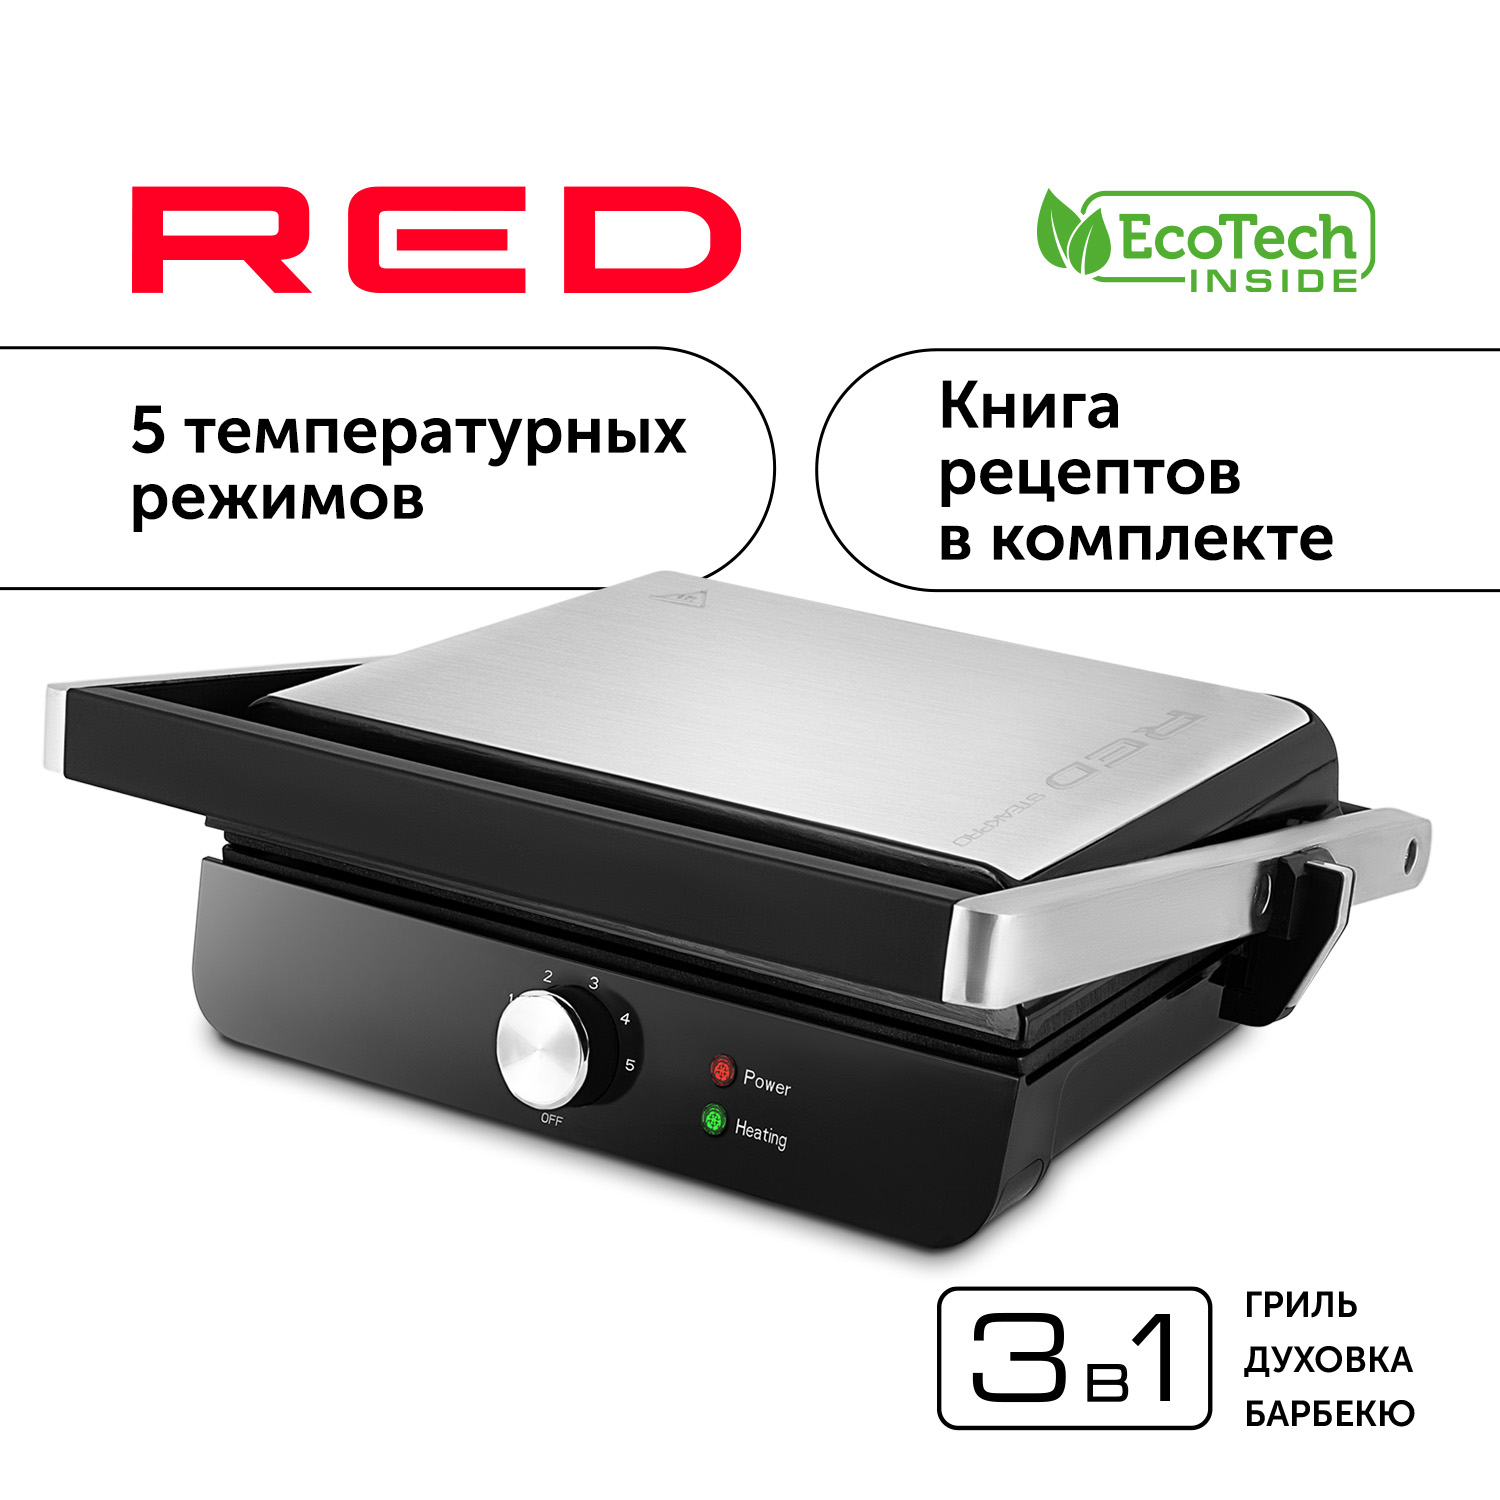 Гриль RED SOLUTION RGM-M815 серебристый, серый, черный пылесос red solution rv ur362 серый